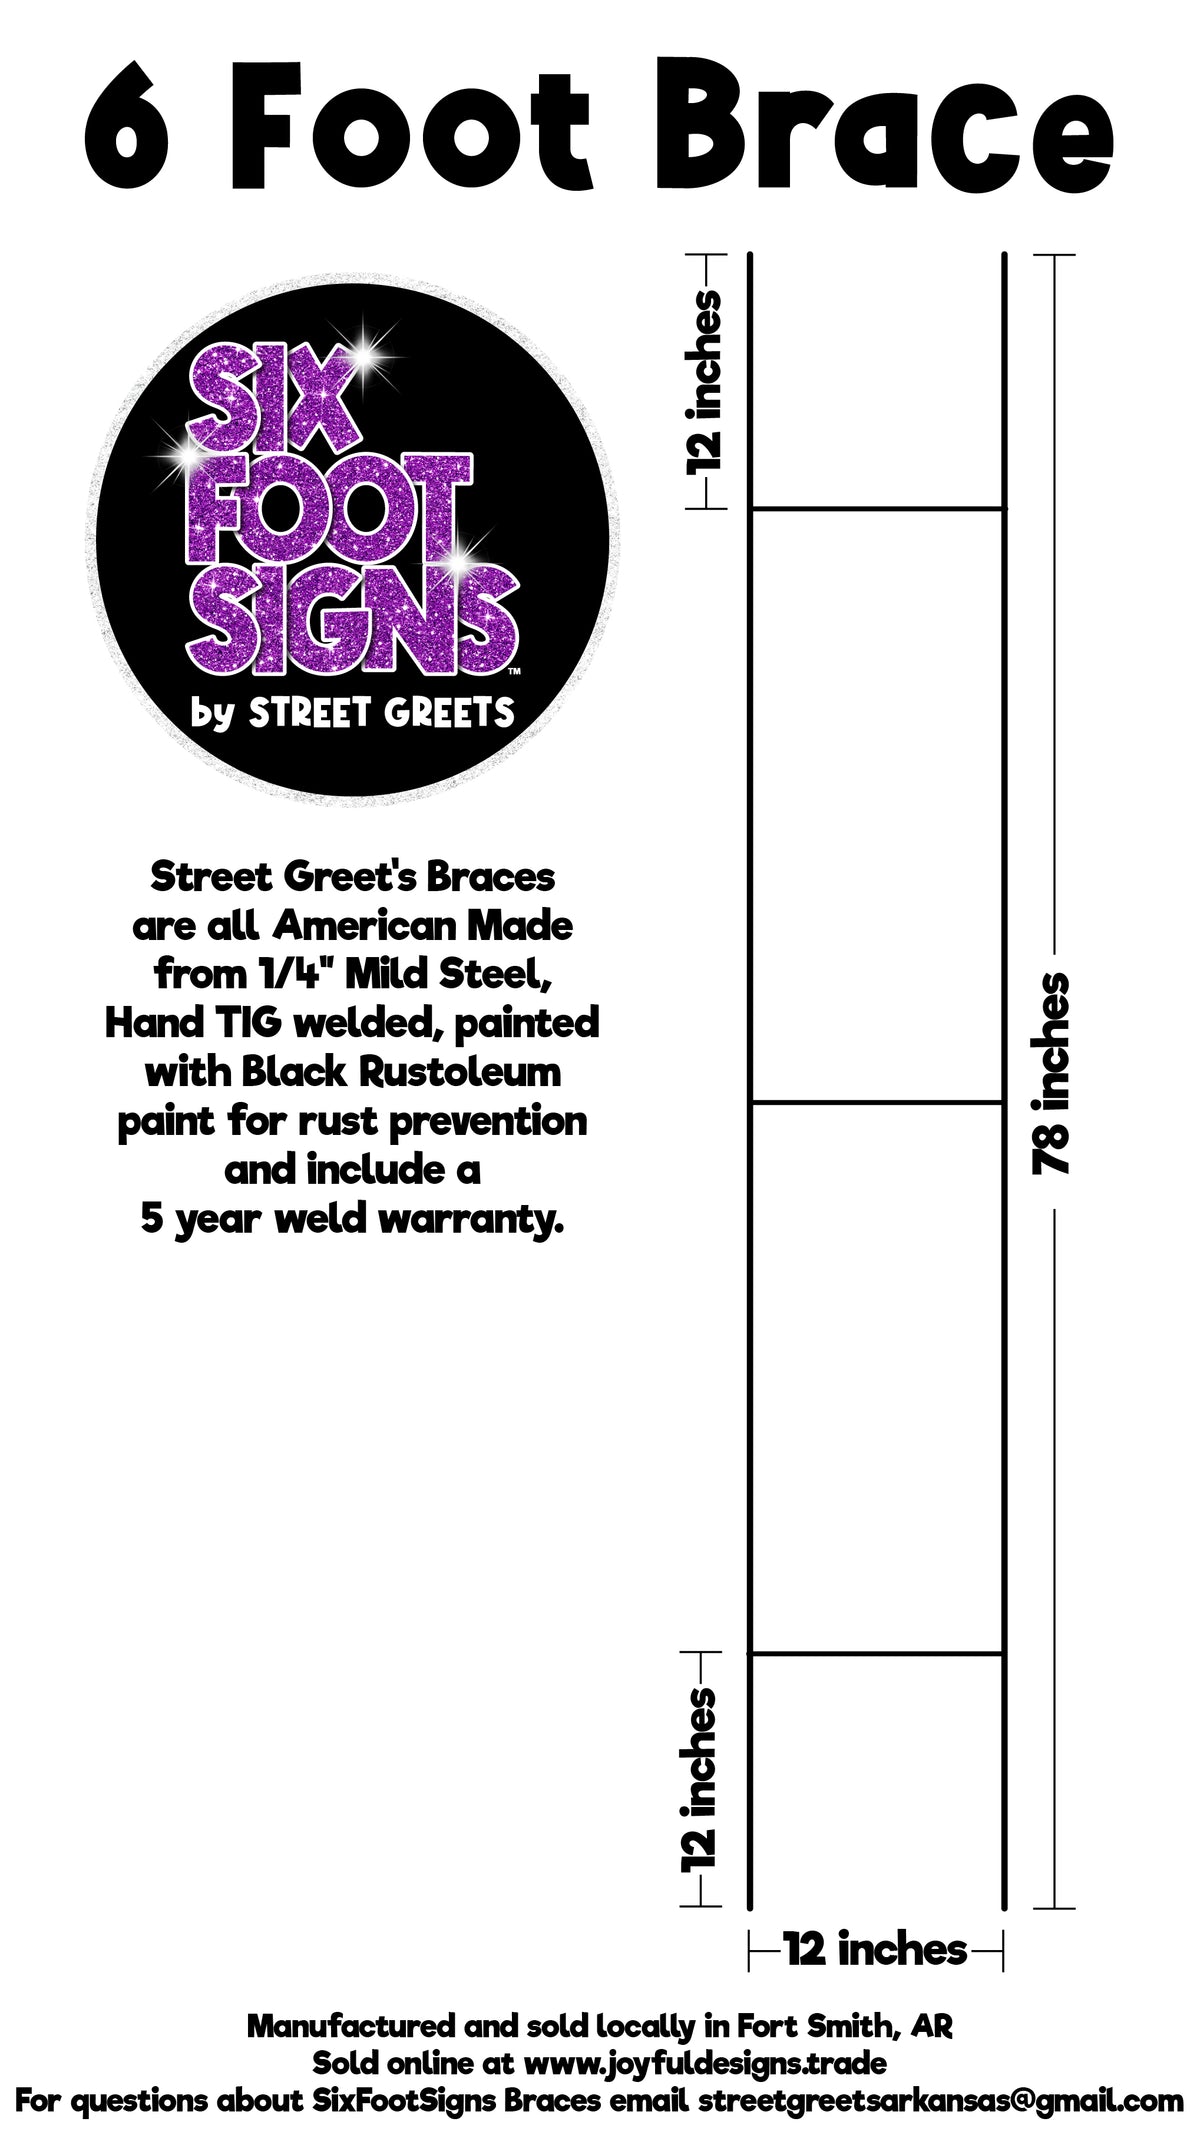 Street Greet's Braces - 4 Pack of 6 Foot Braces